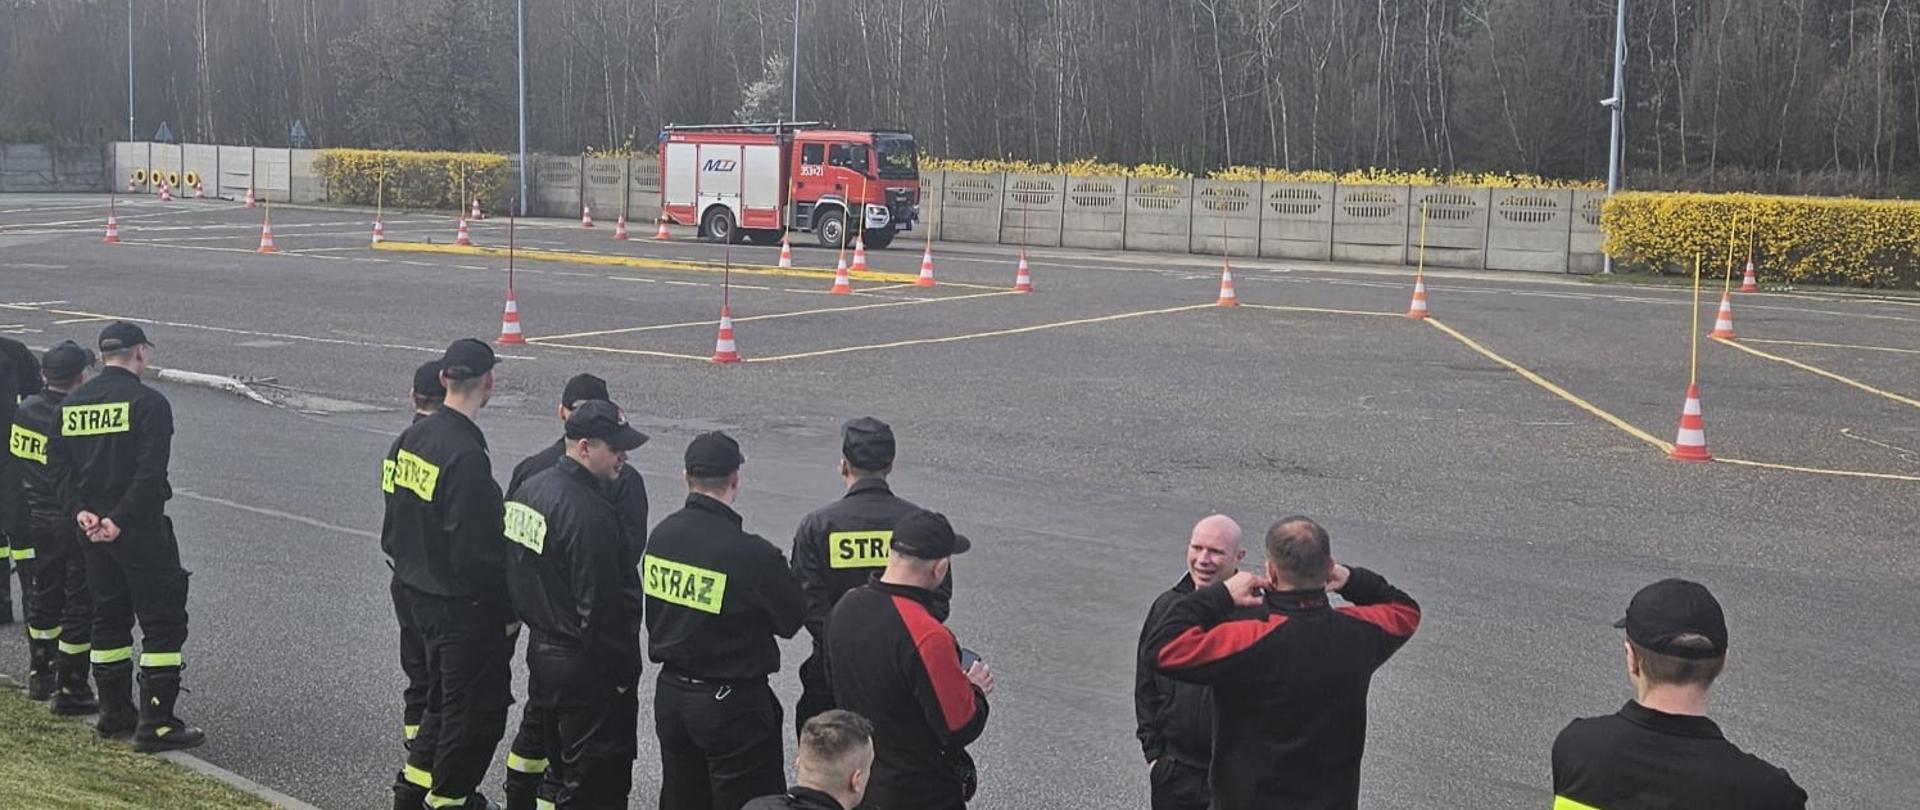 Na zdjęciu strażacy stojący przy placu manewrowym, na którym jeden z kierowców w samochodzie ratowniczo-gaśniczym wjeżdża w wyznaczone pachołkami ciasne miejsca tak aby nie potrącić żadnego z nich.